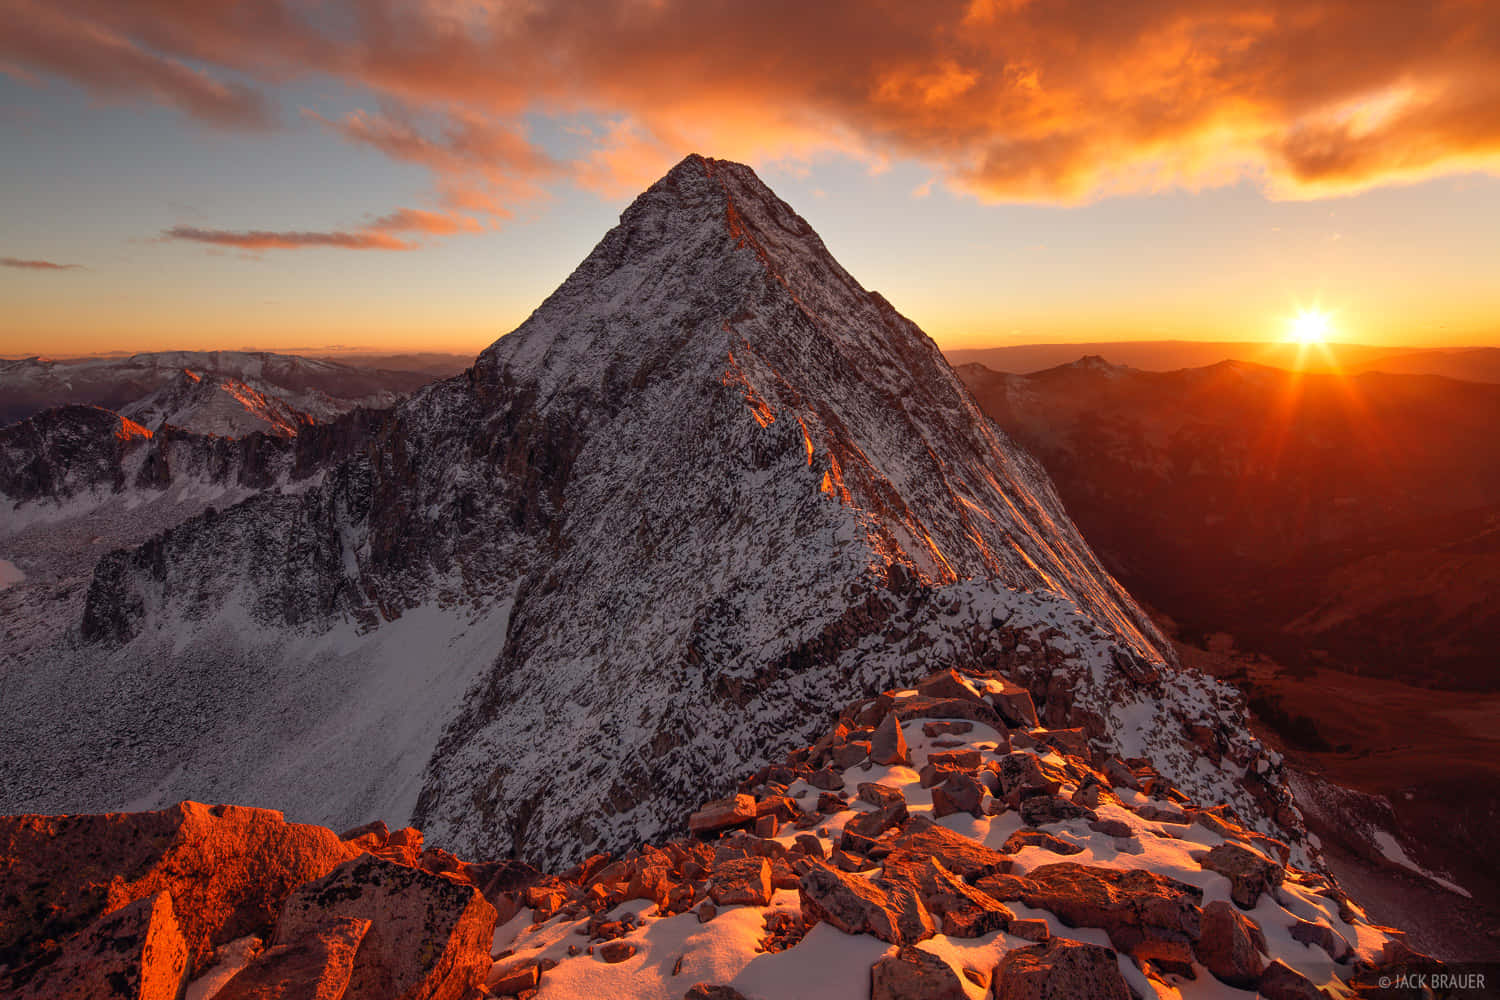 Contemplala Majestuosidad De La Naturaleza En Esta Impresionante Escena De Montaña En 4k.